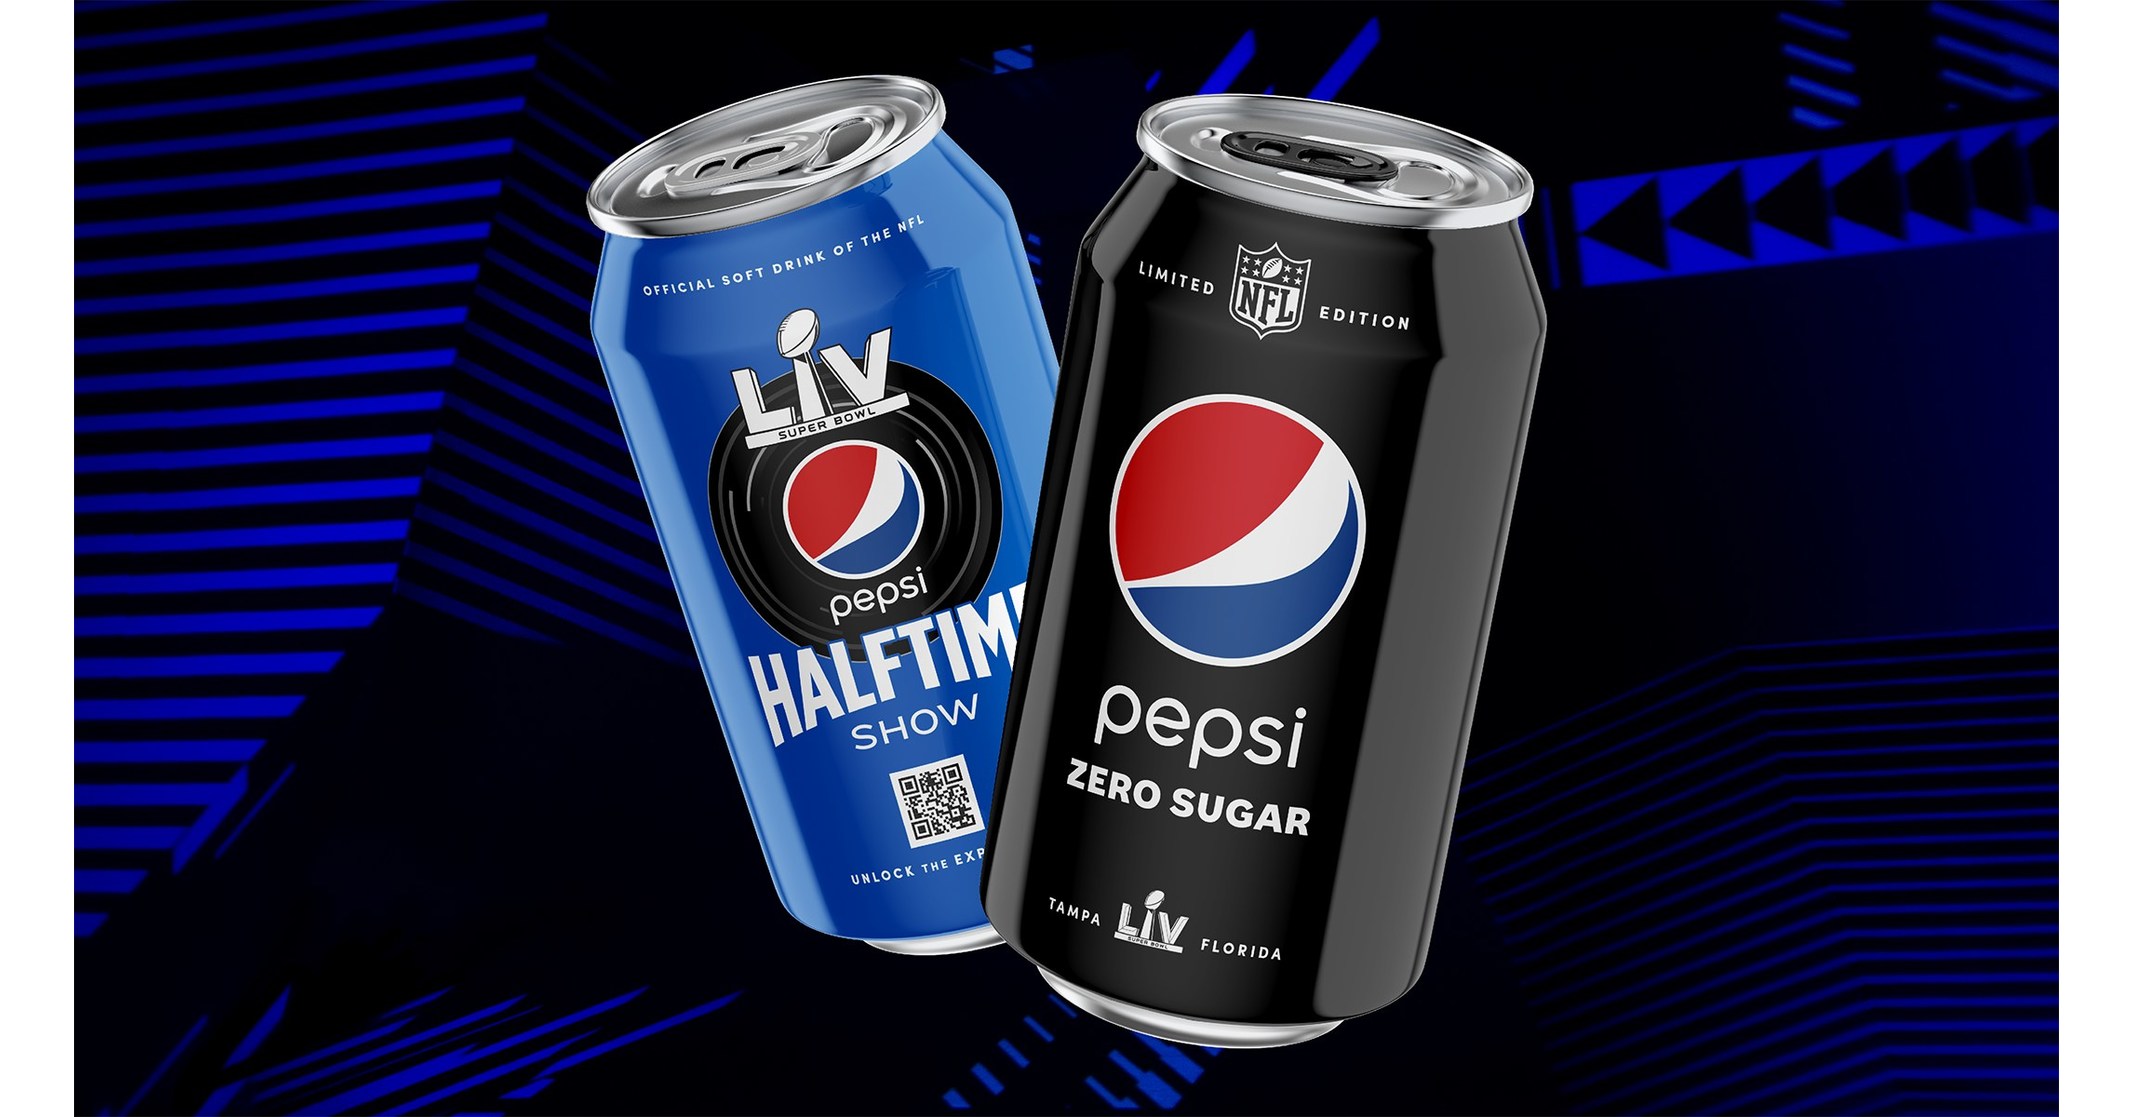 Pepsi lets fans step inside its Super Bowl LV Halftime Show